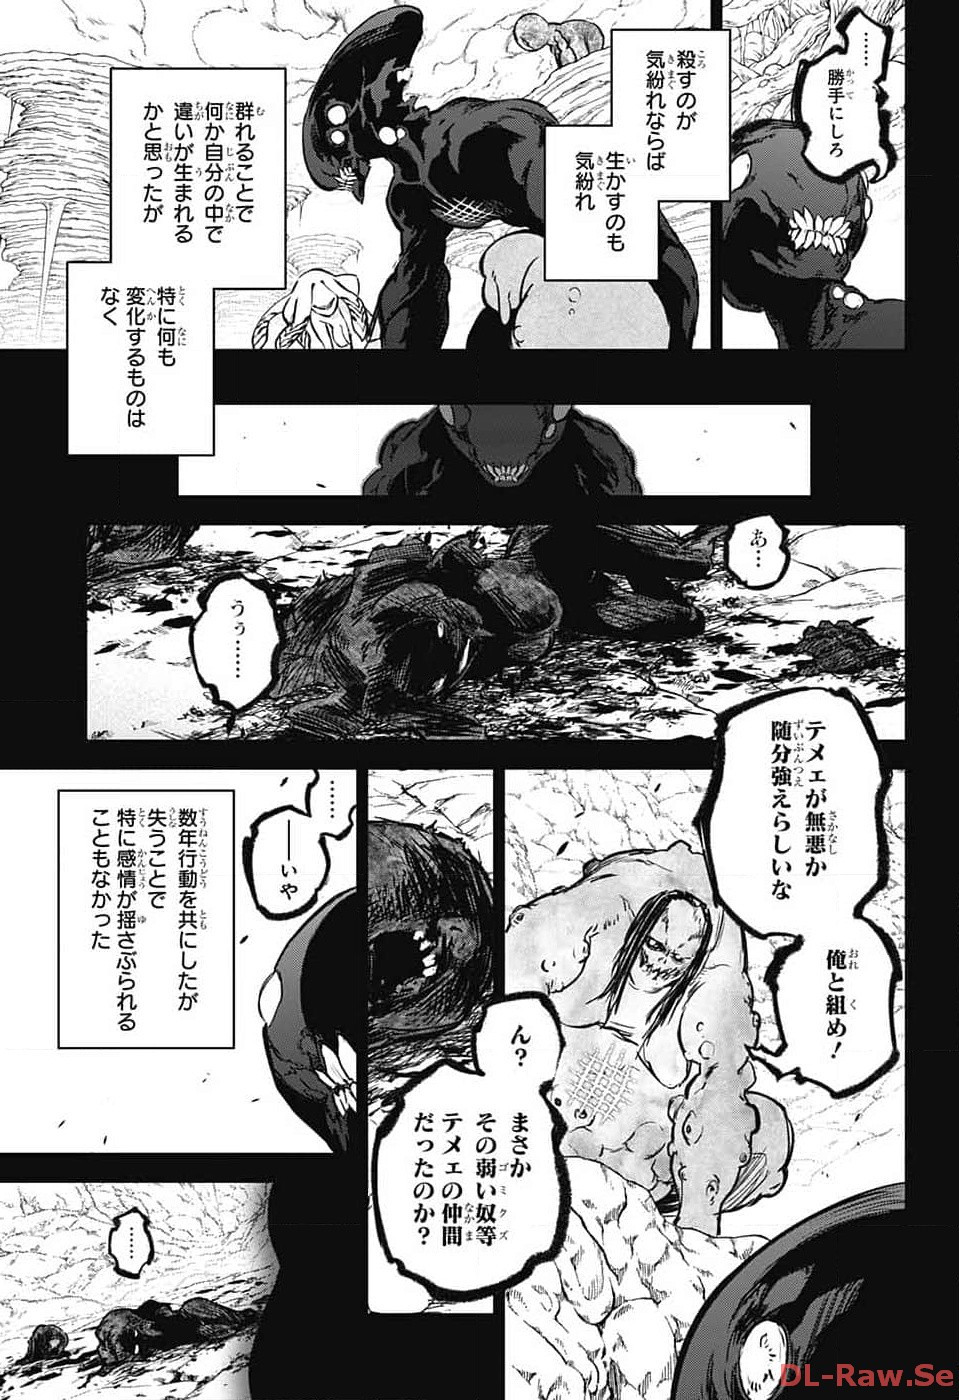 Sousei no Onmyouji - Chapter 126 - Page 3